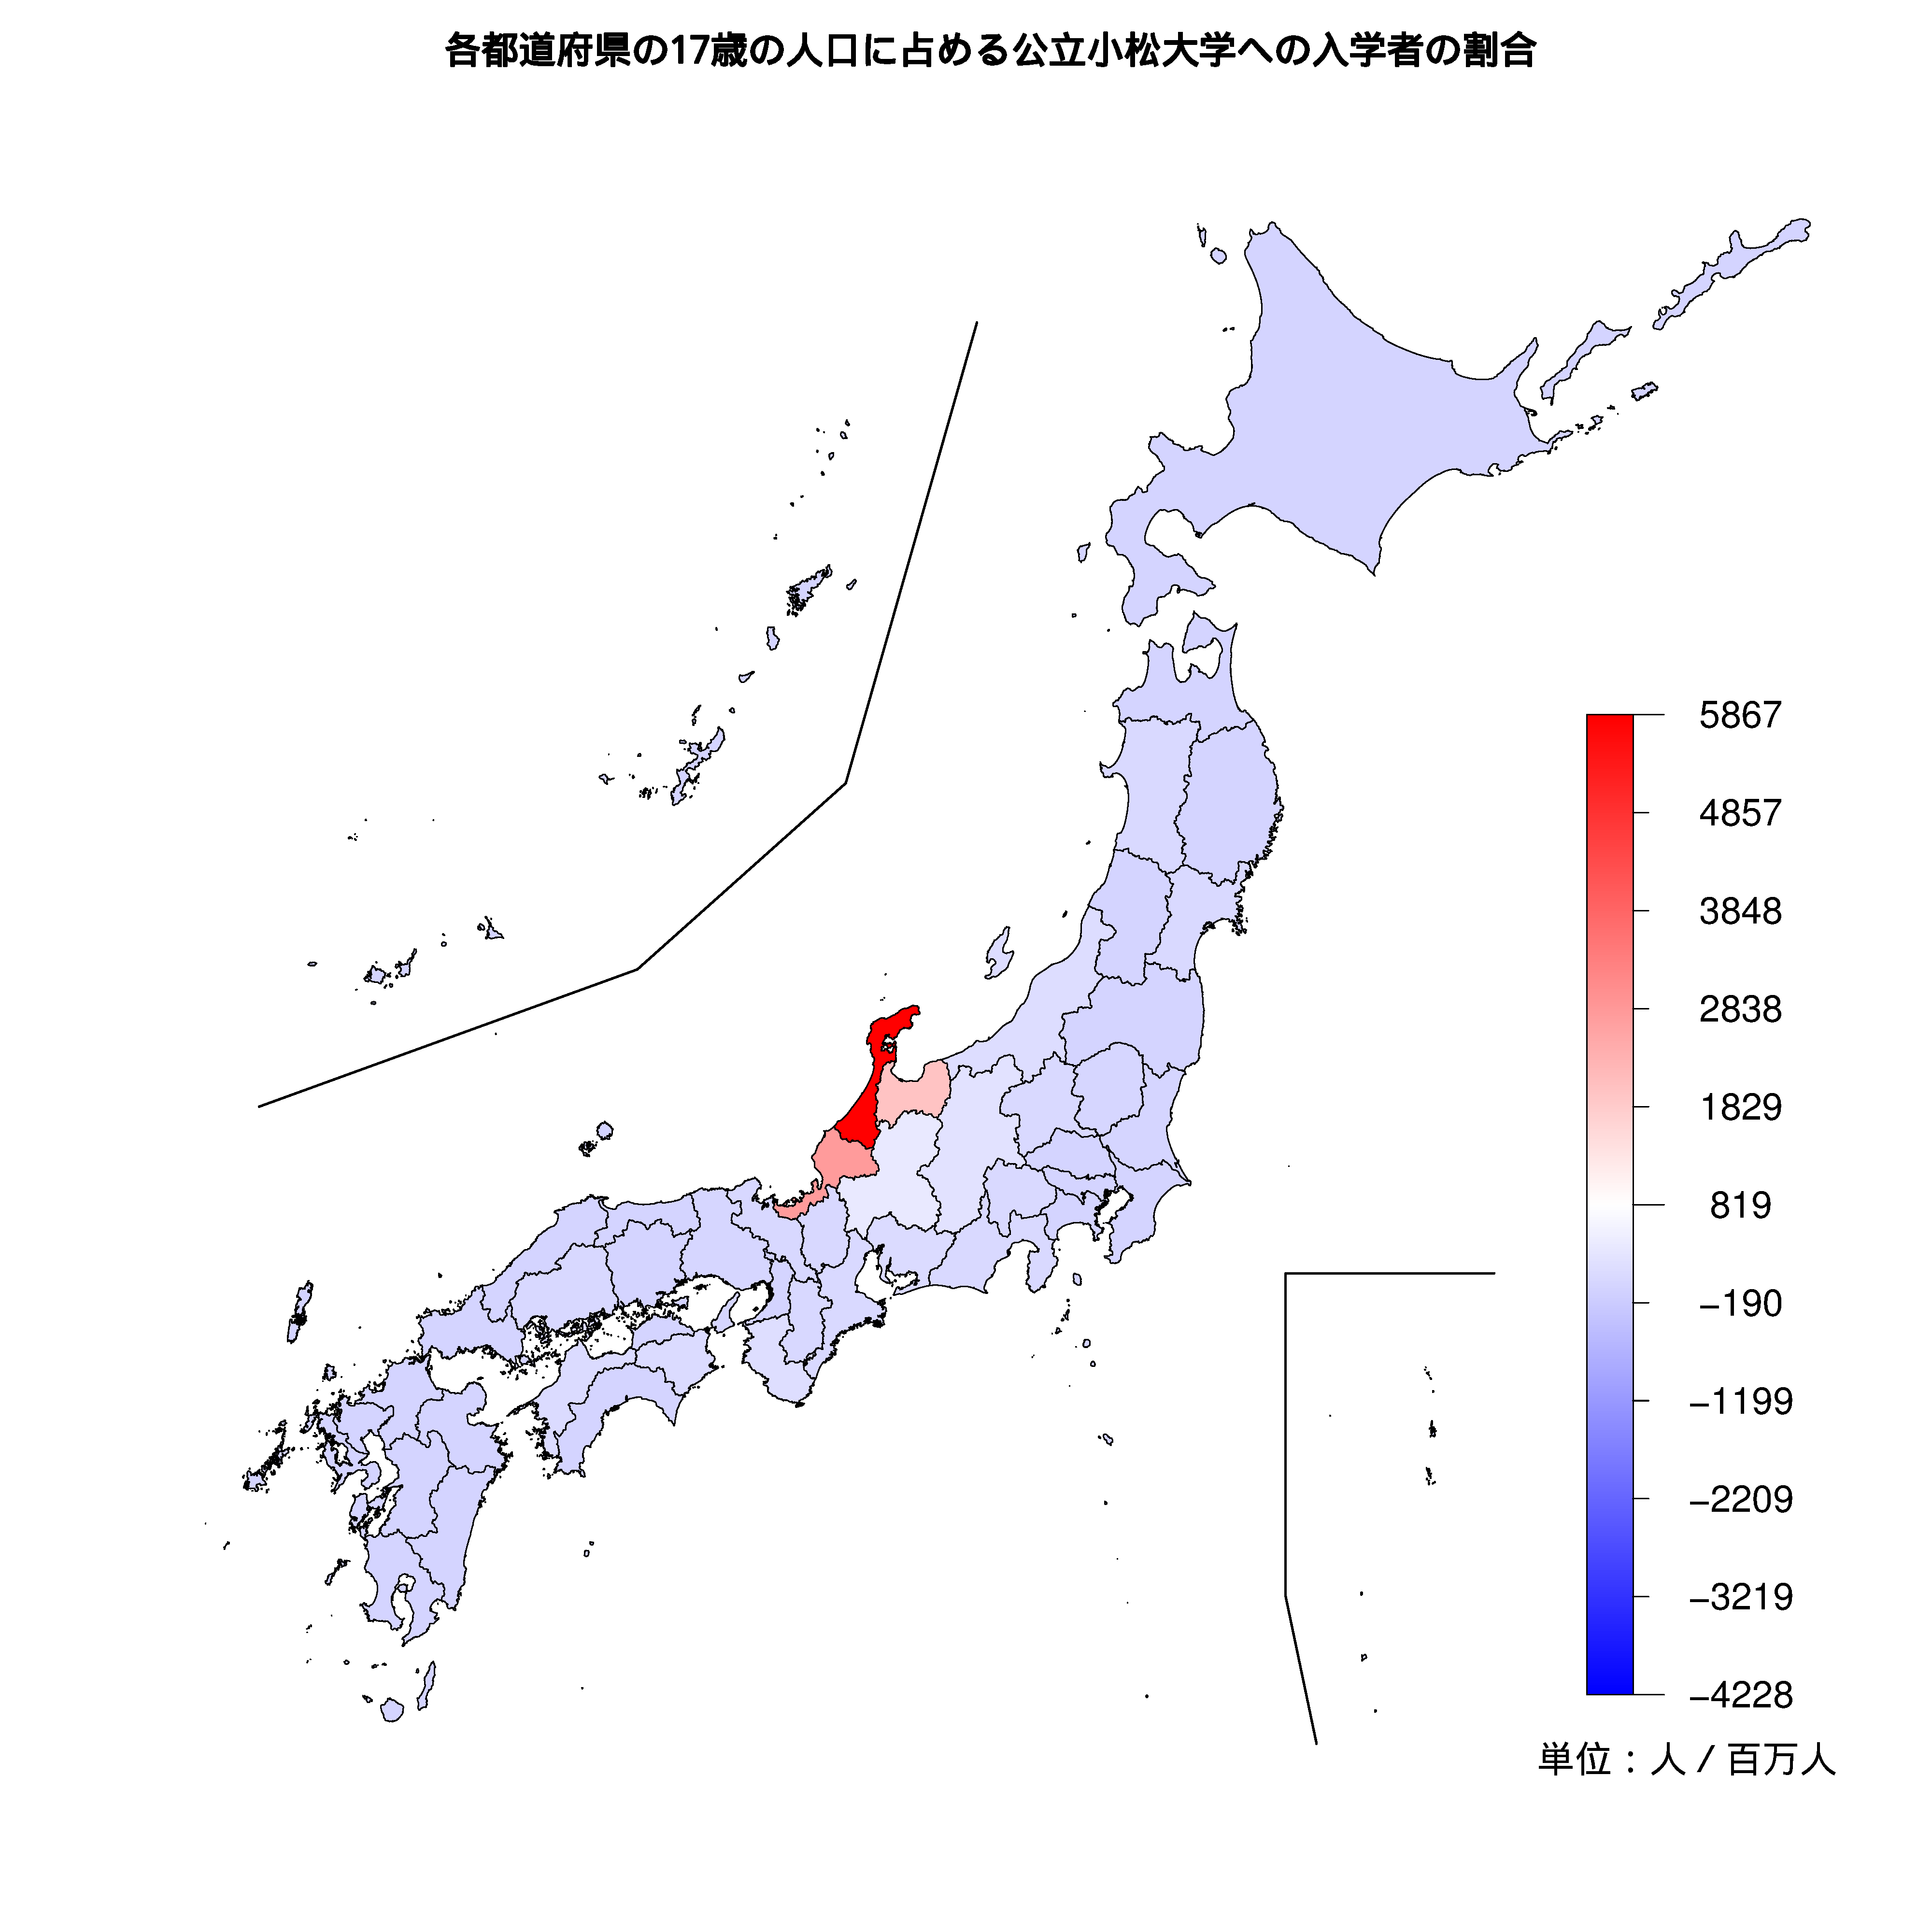 公立小松大学への入学者が多い都道府県の色分け地図